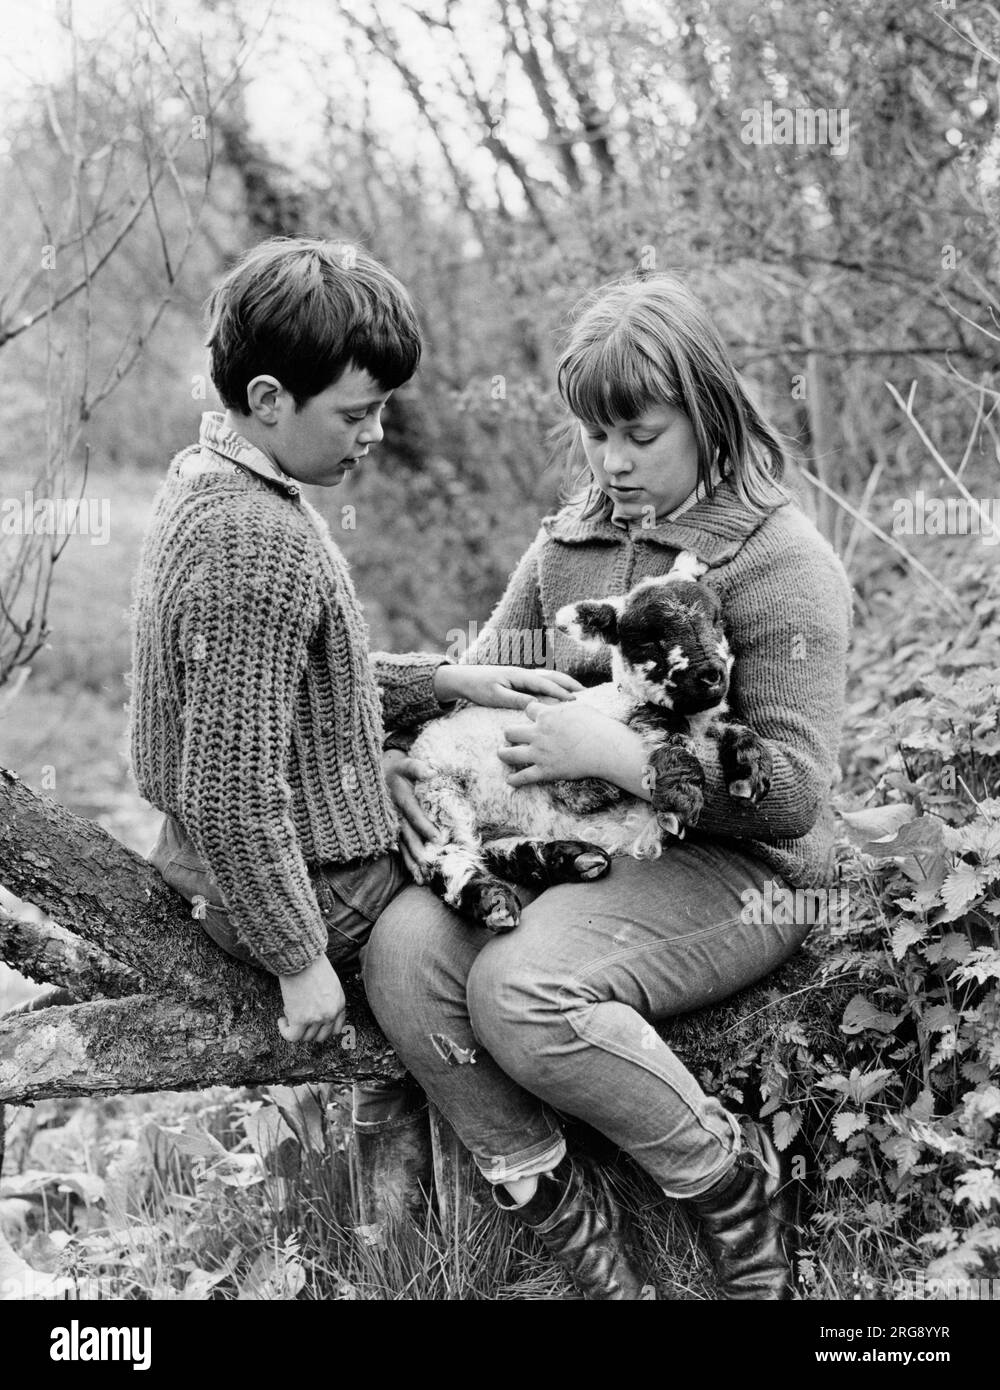 Ein Junge und ein Mädchen sitzen auf einem umgestürzten Baum und halten ein Lamm, das recht bequem aussieht. Stockfoto